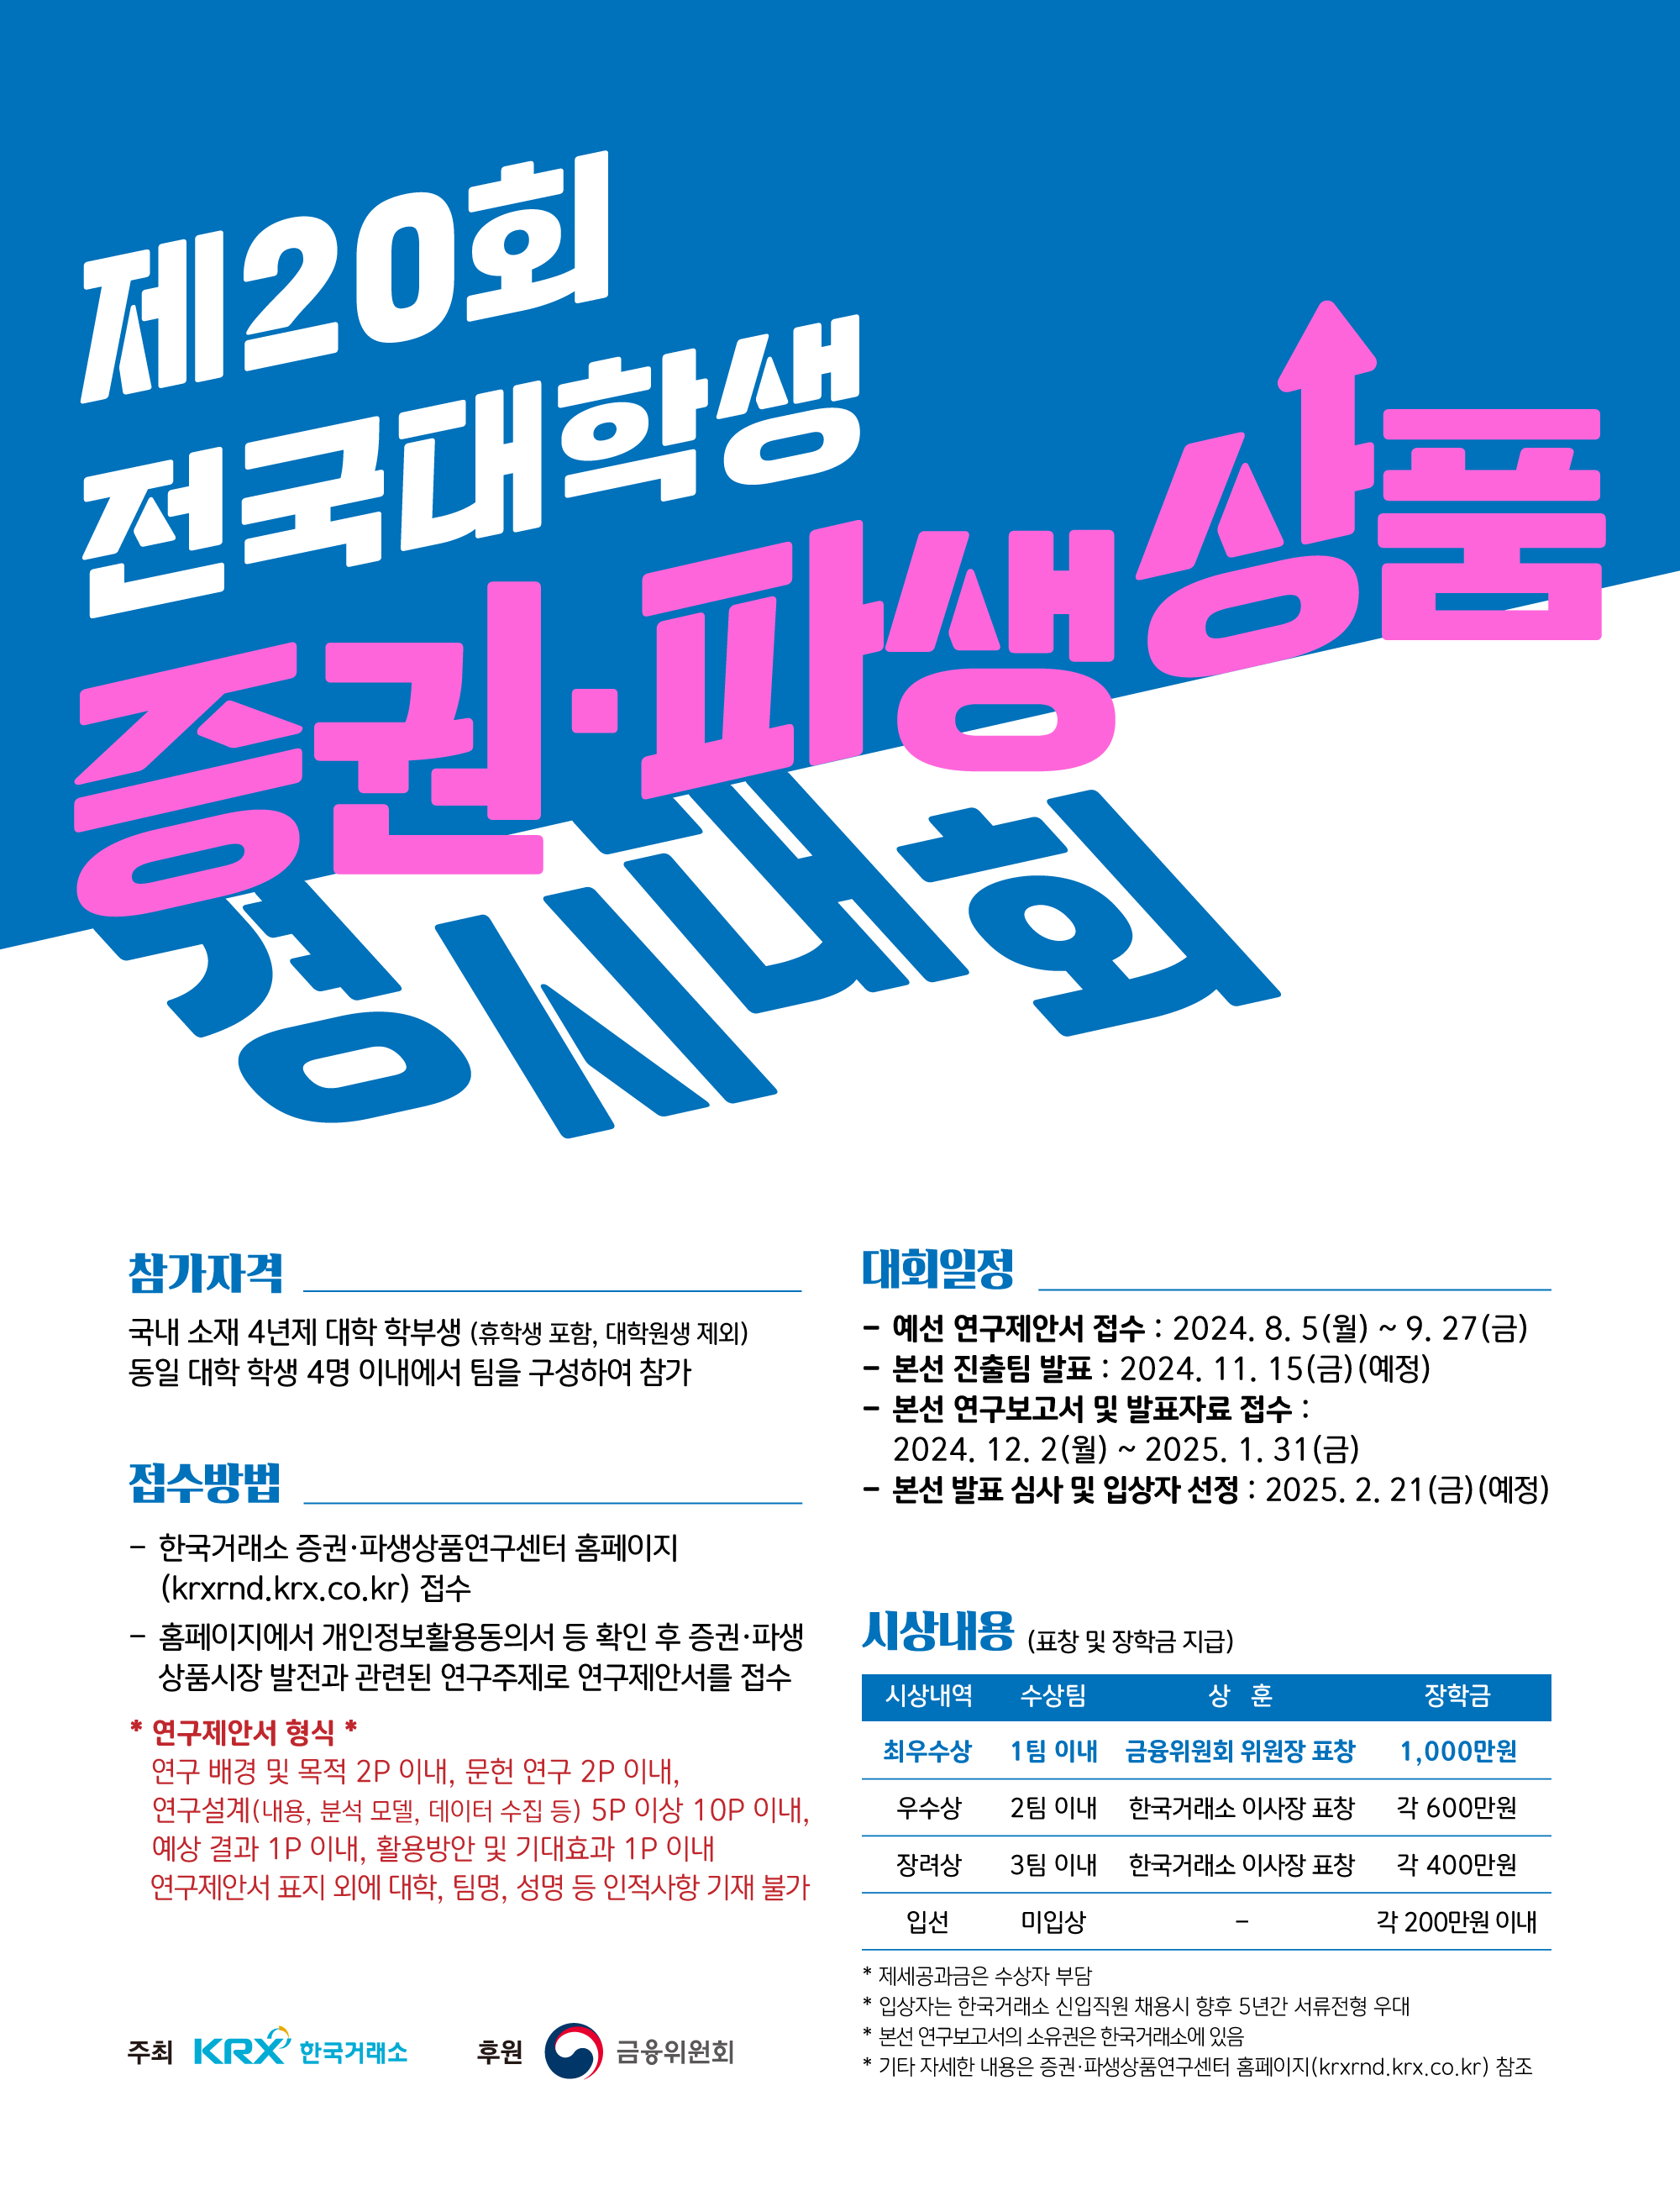 [한국거래소] 제20회 전국대학생 증권ㆍ파생상품 경시대회